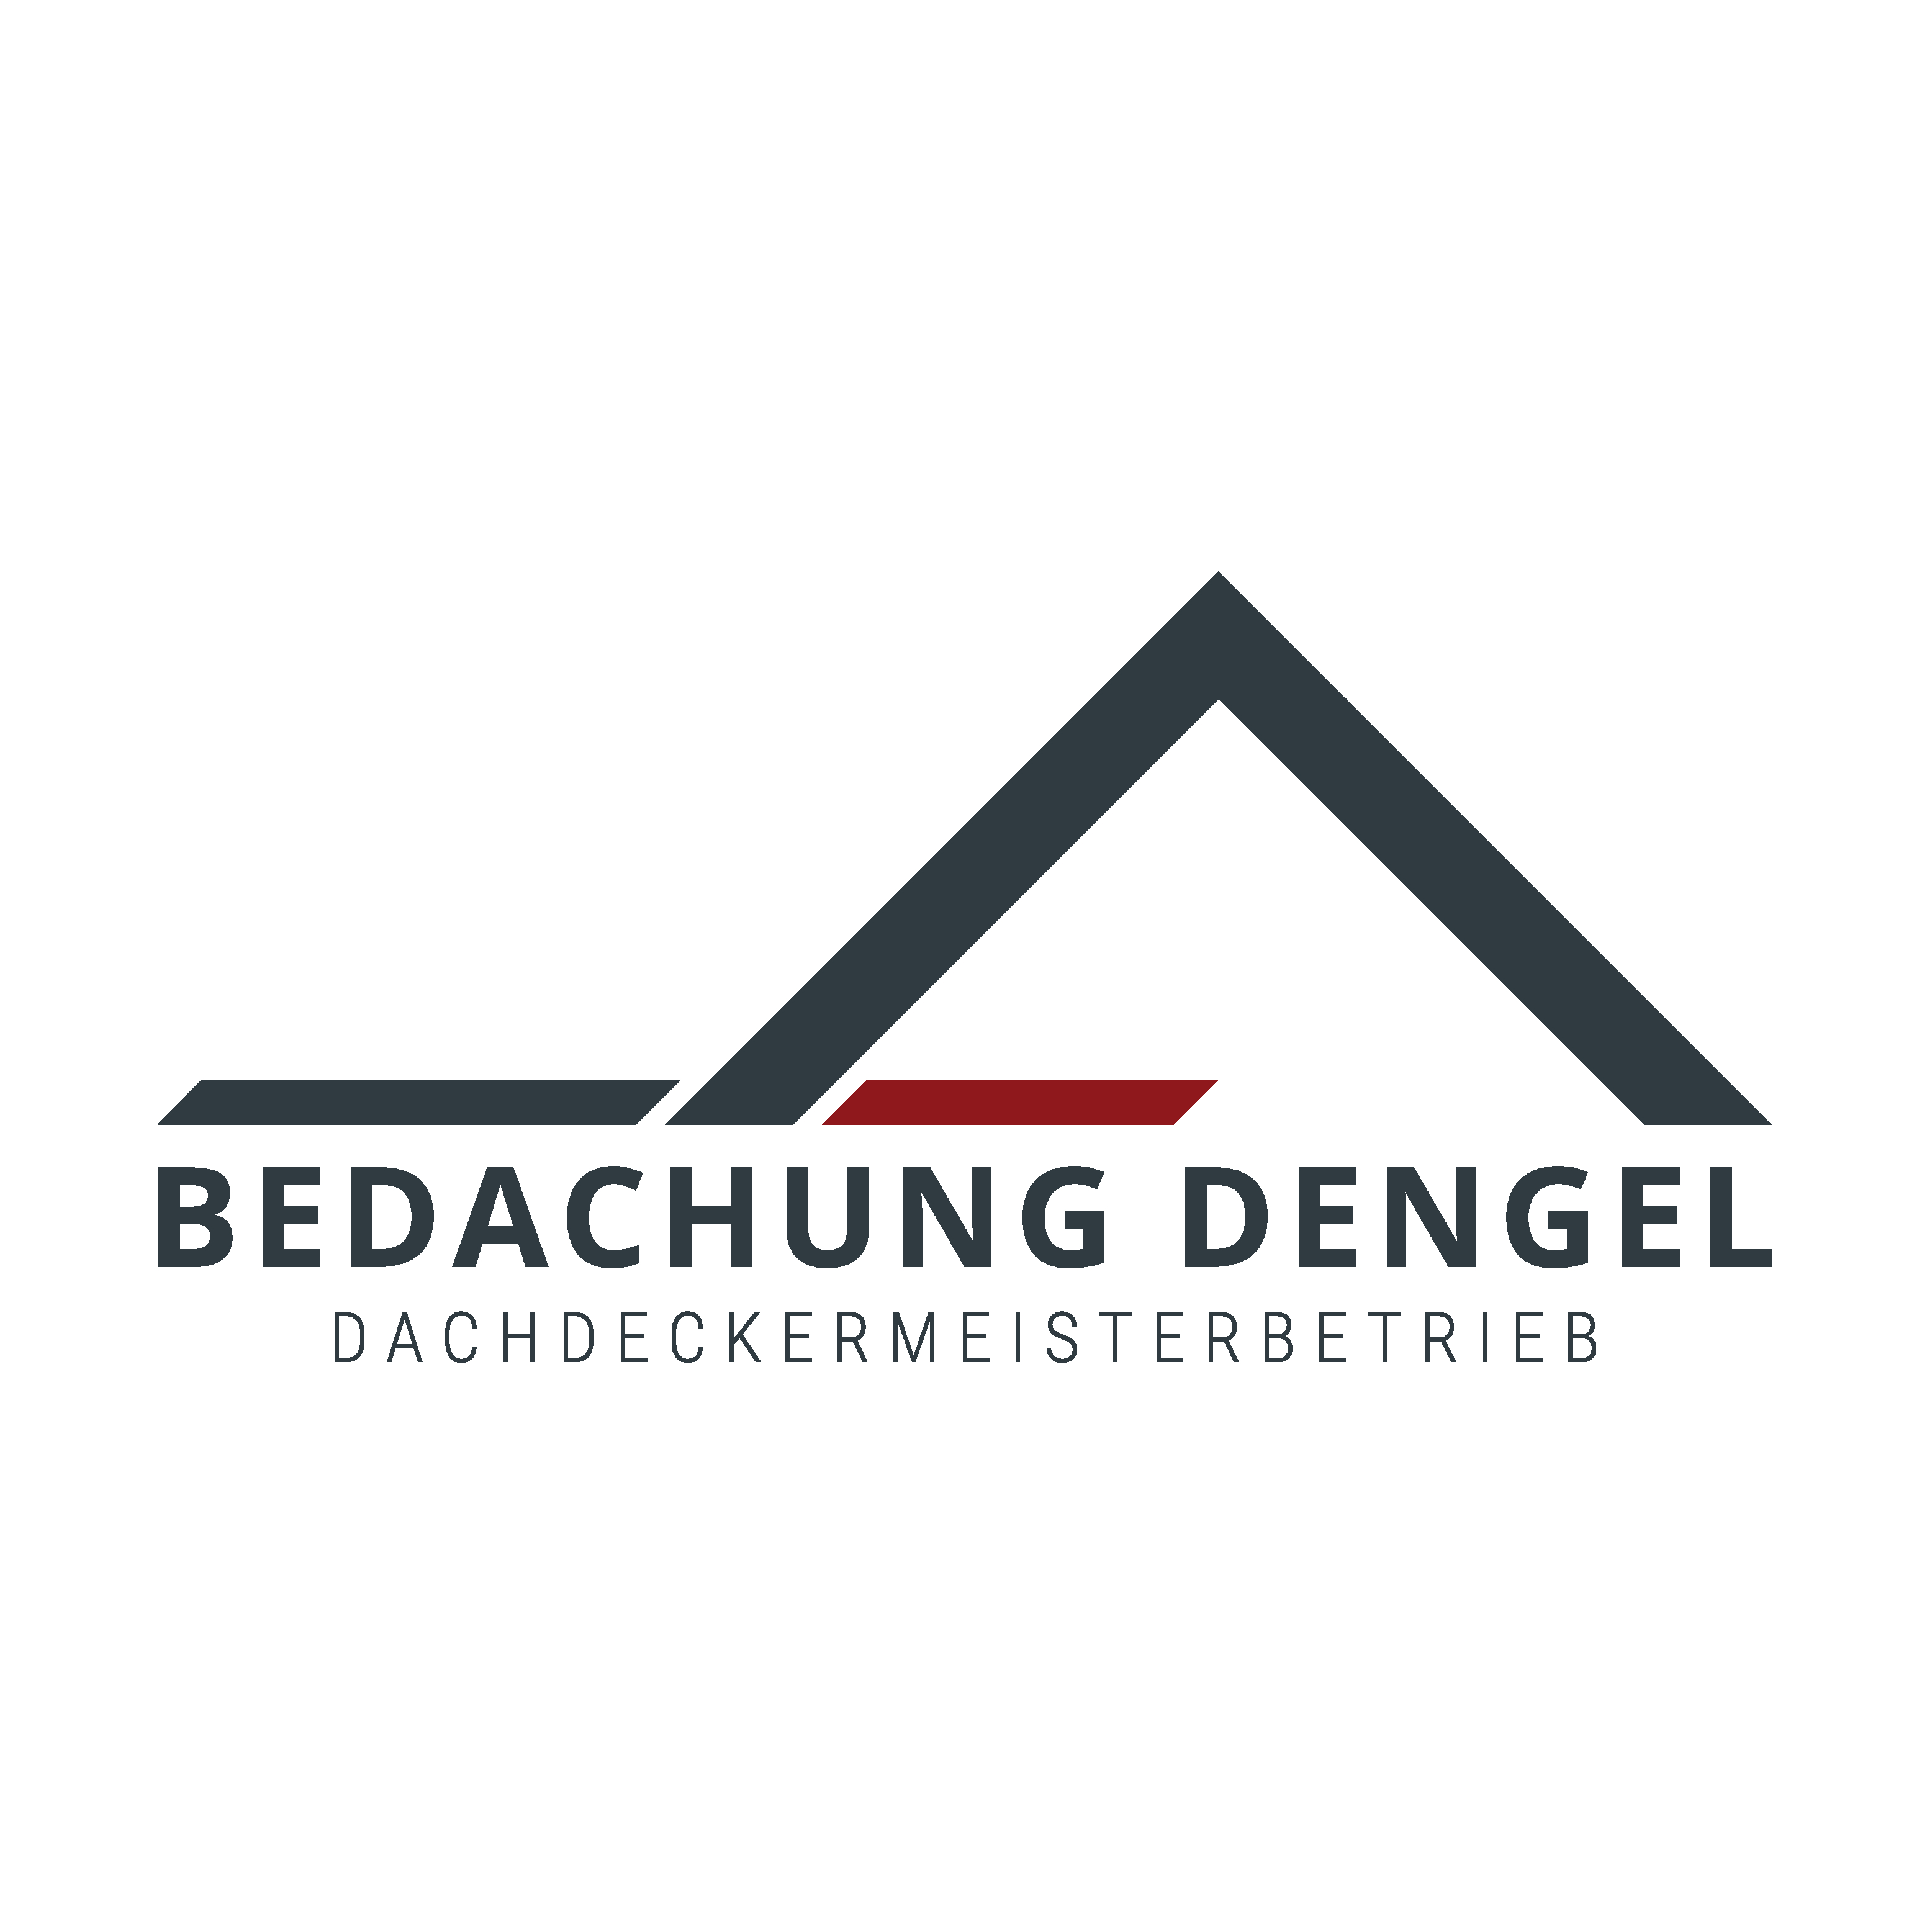 Dachdecker - Bedachungen Dengel Logo